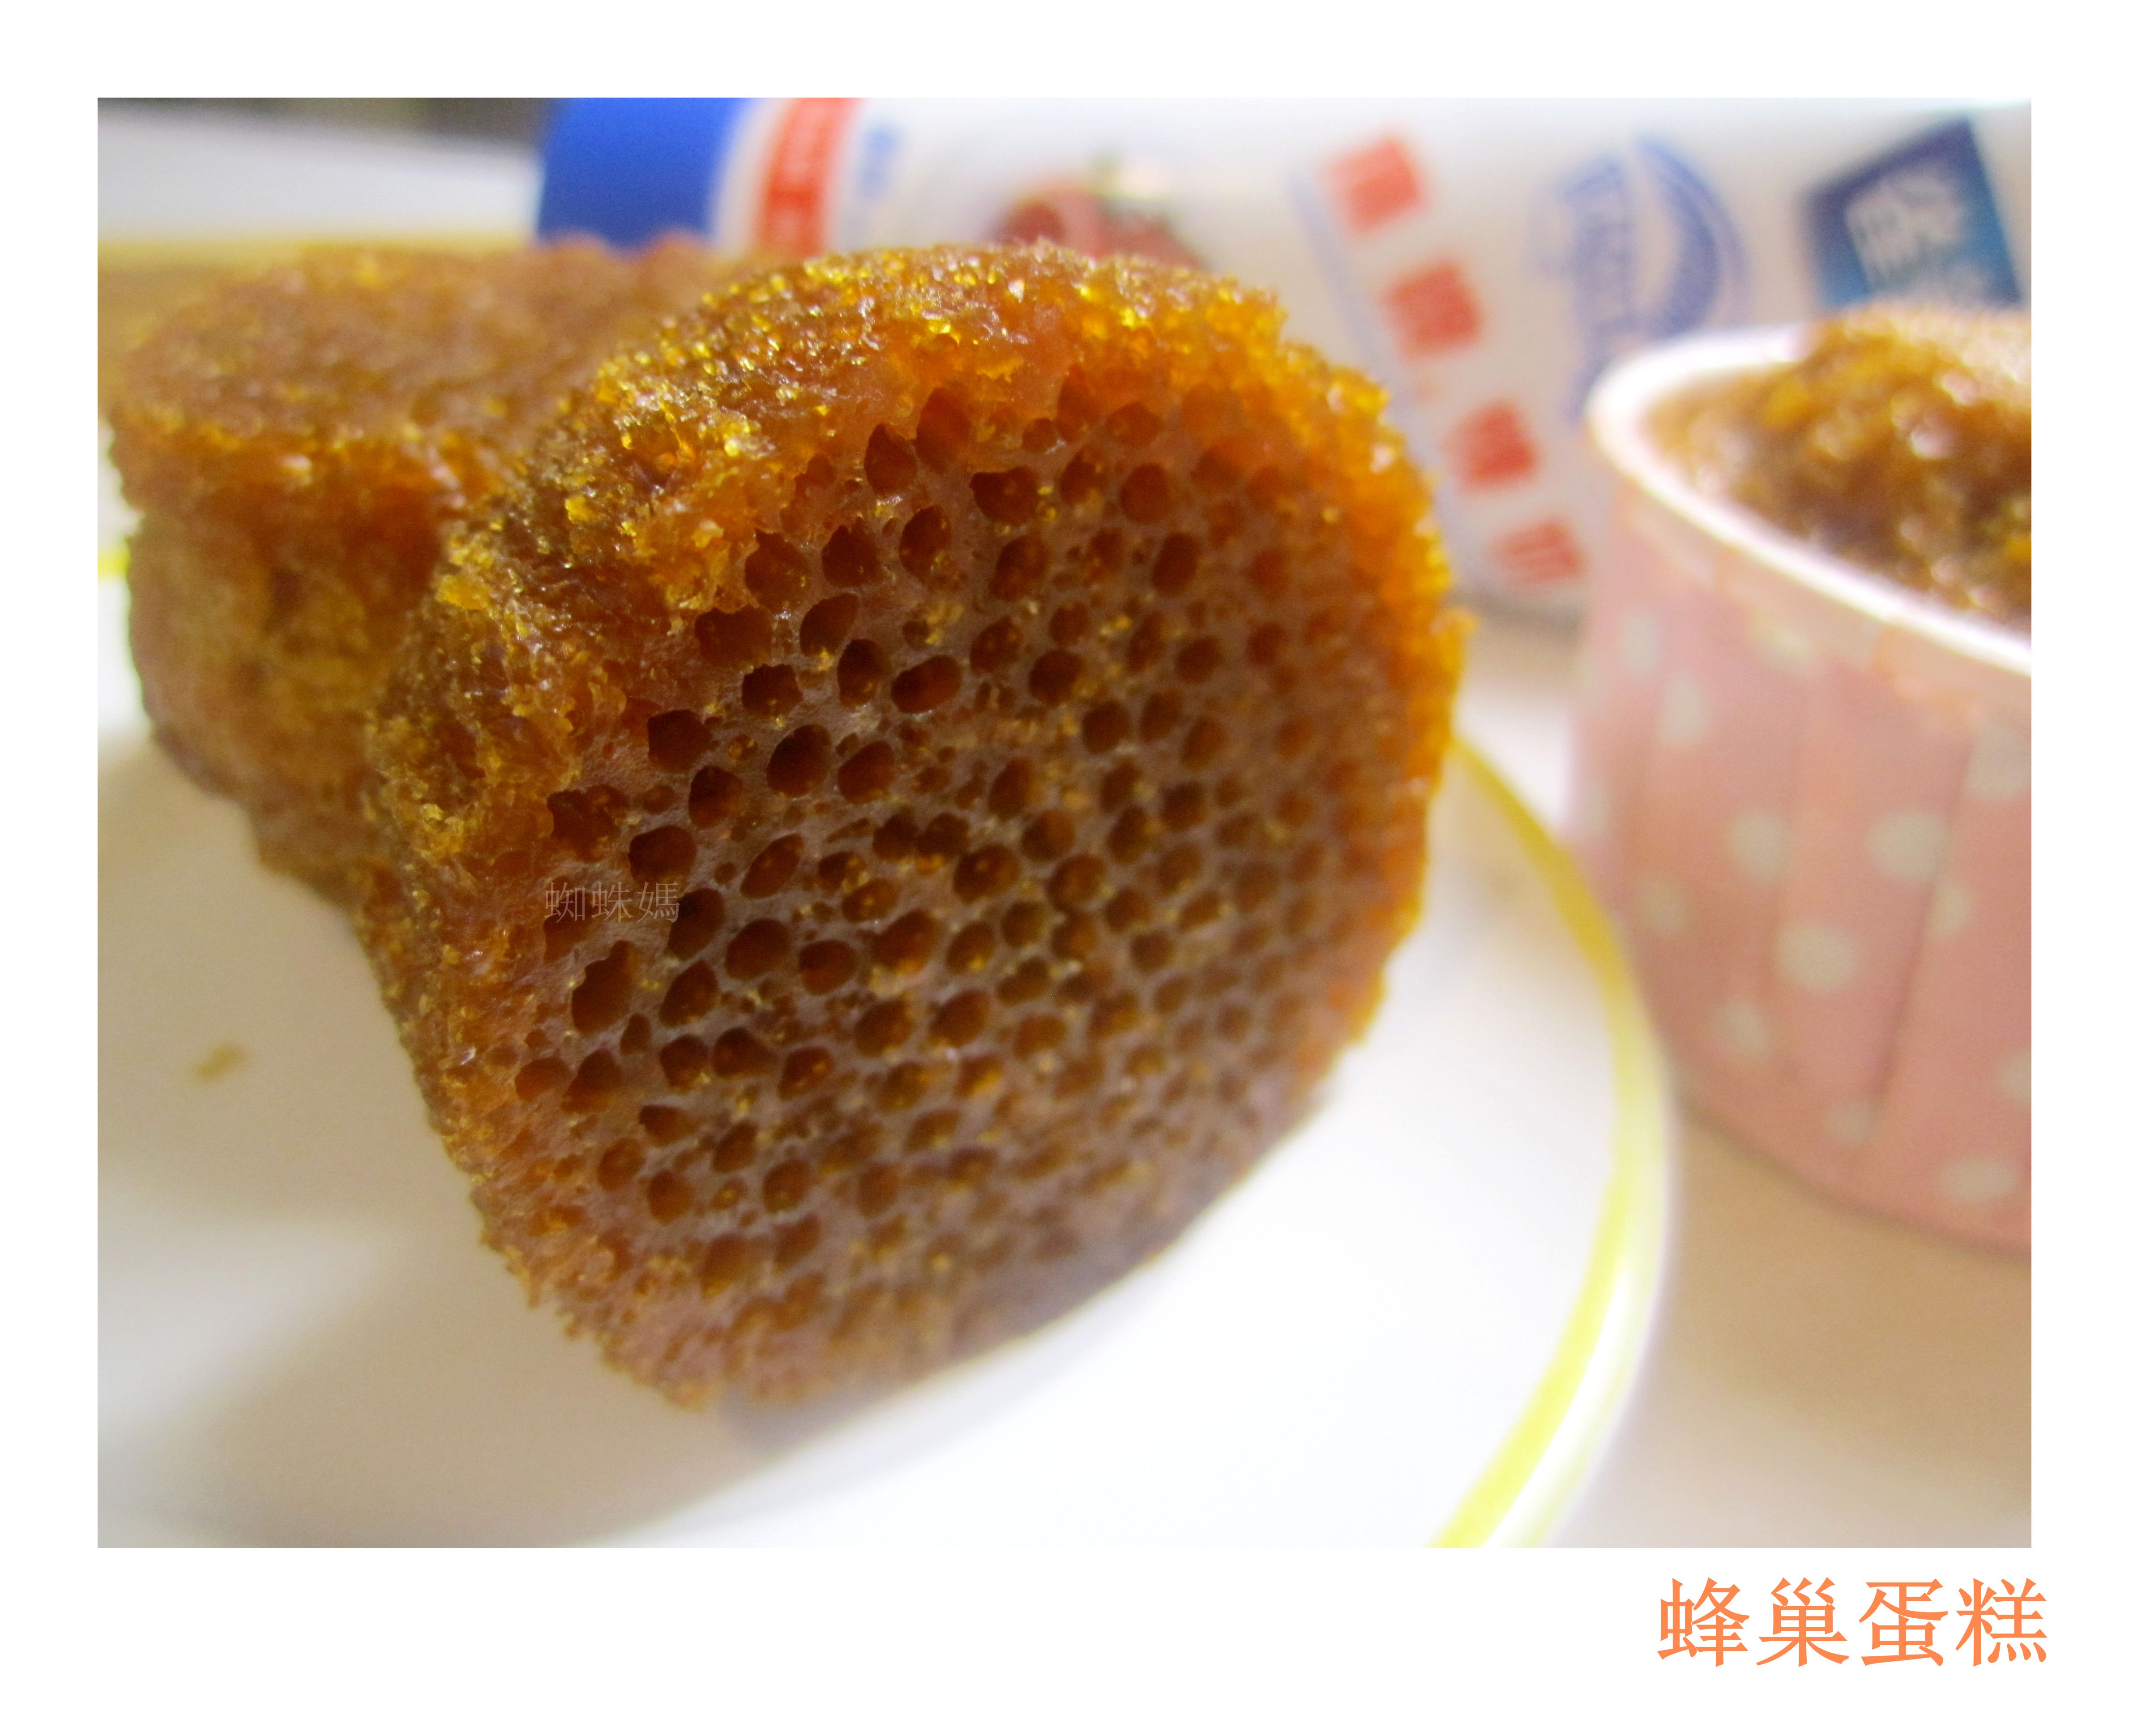 小星星の天空: Caramel Honeycomb Cake 焦糖蜂巢蛋糕